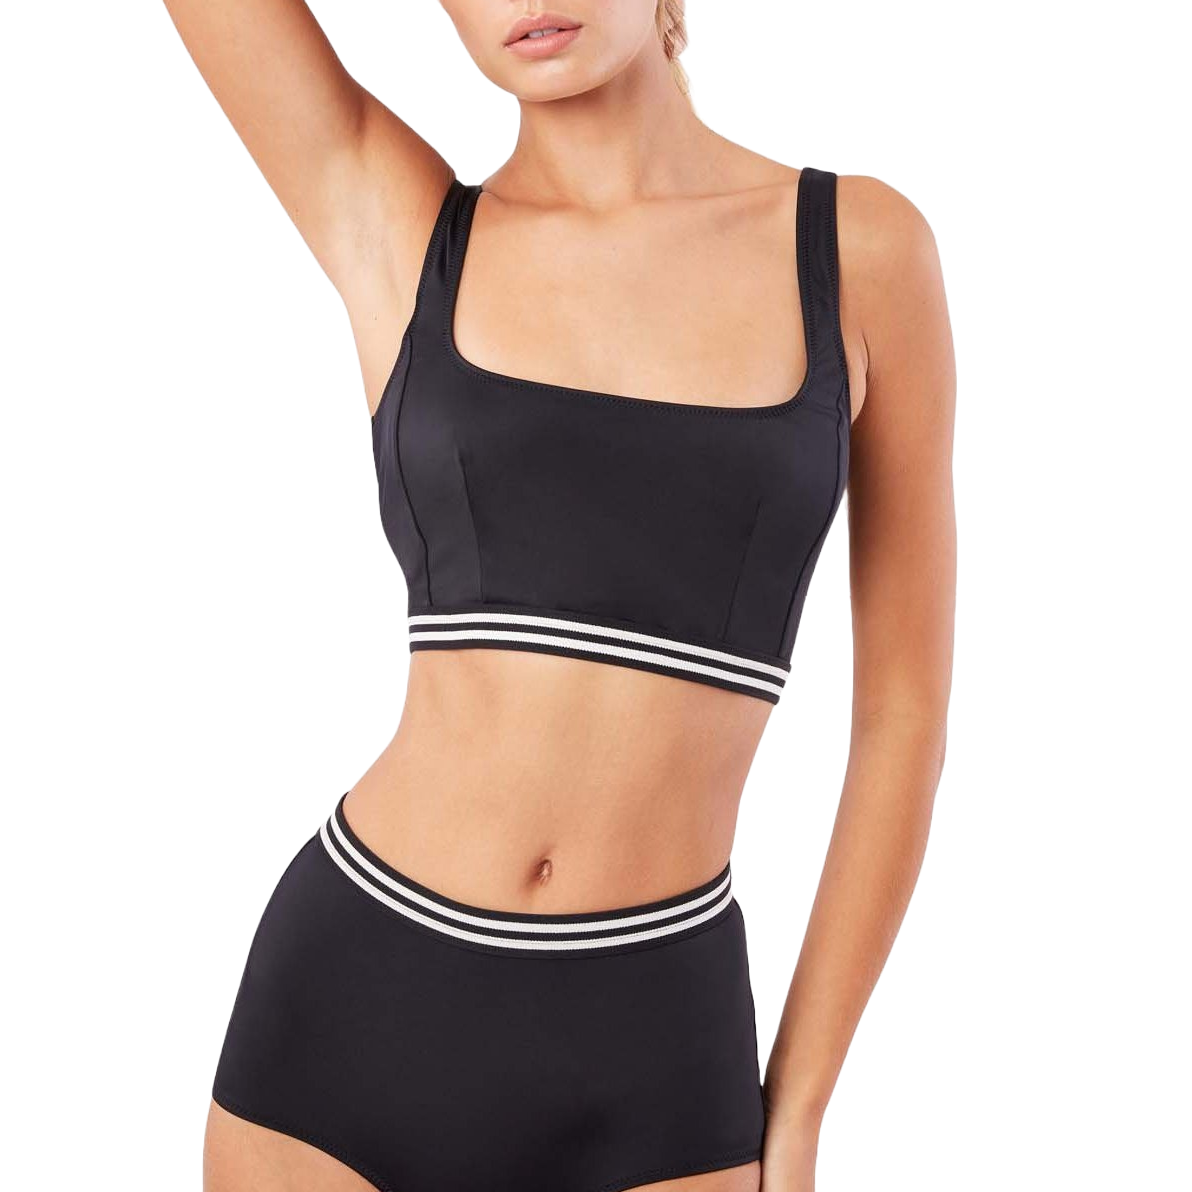 The Kayla Bikini Top